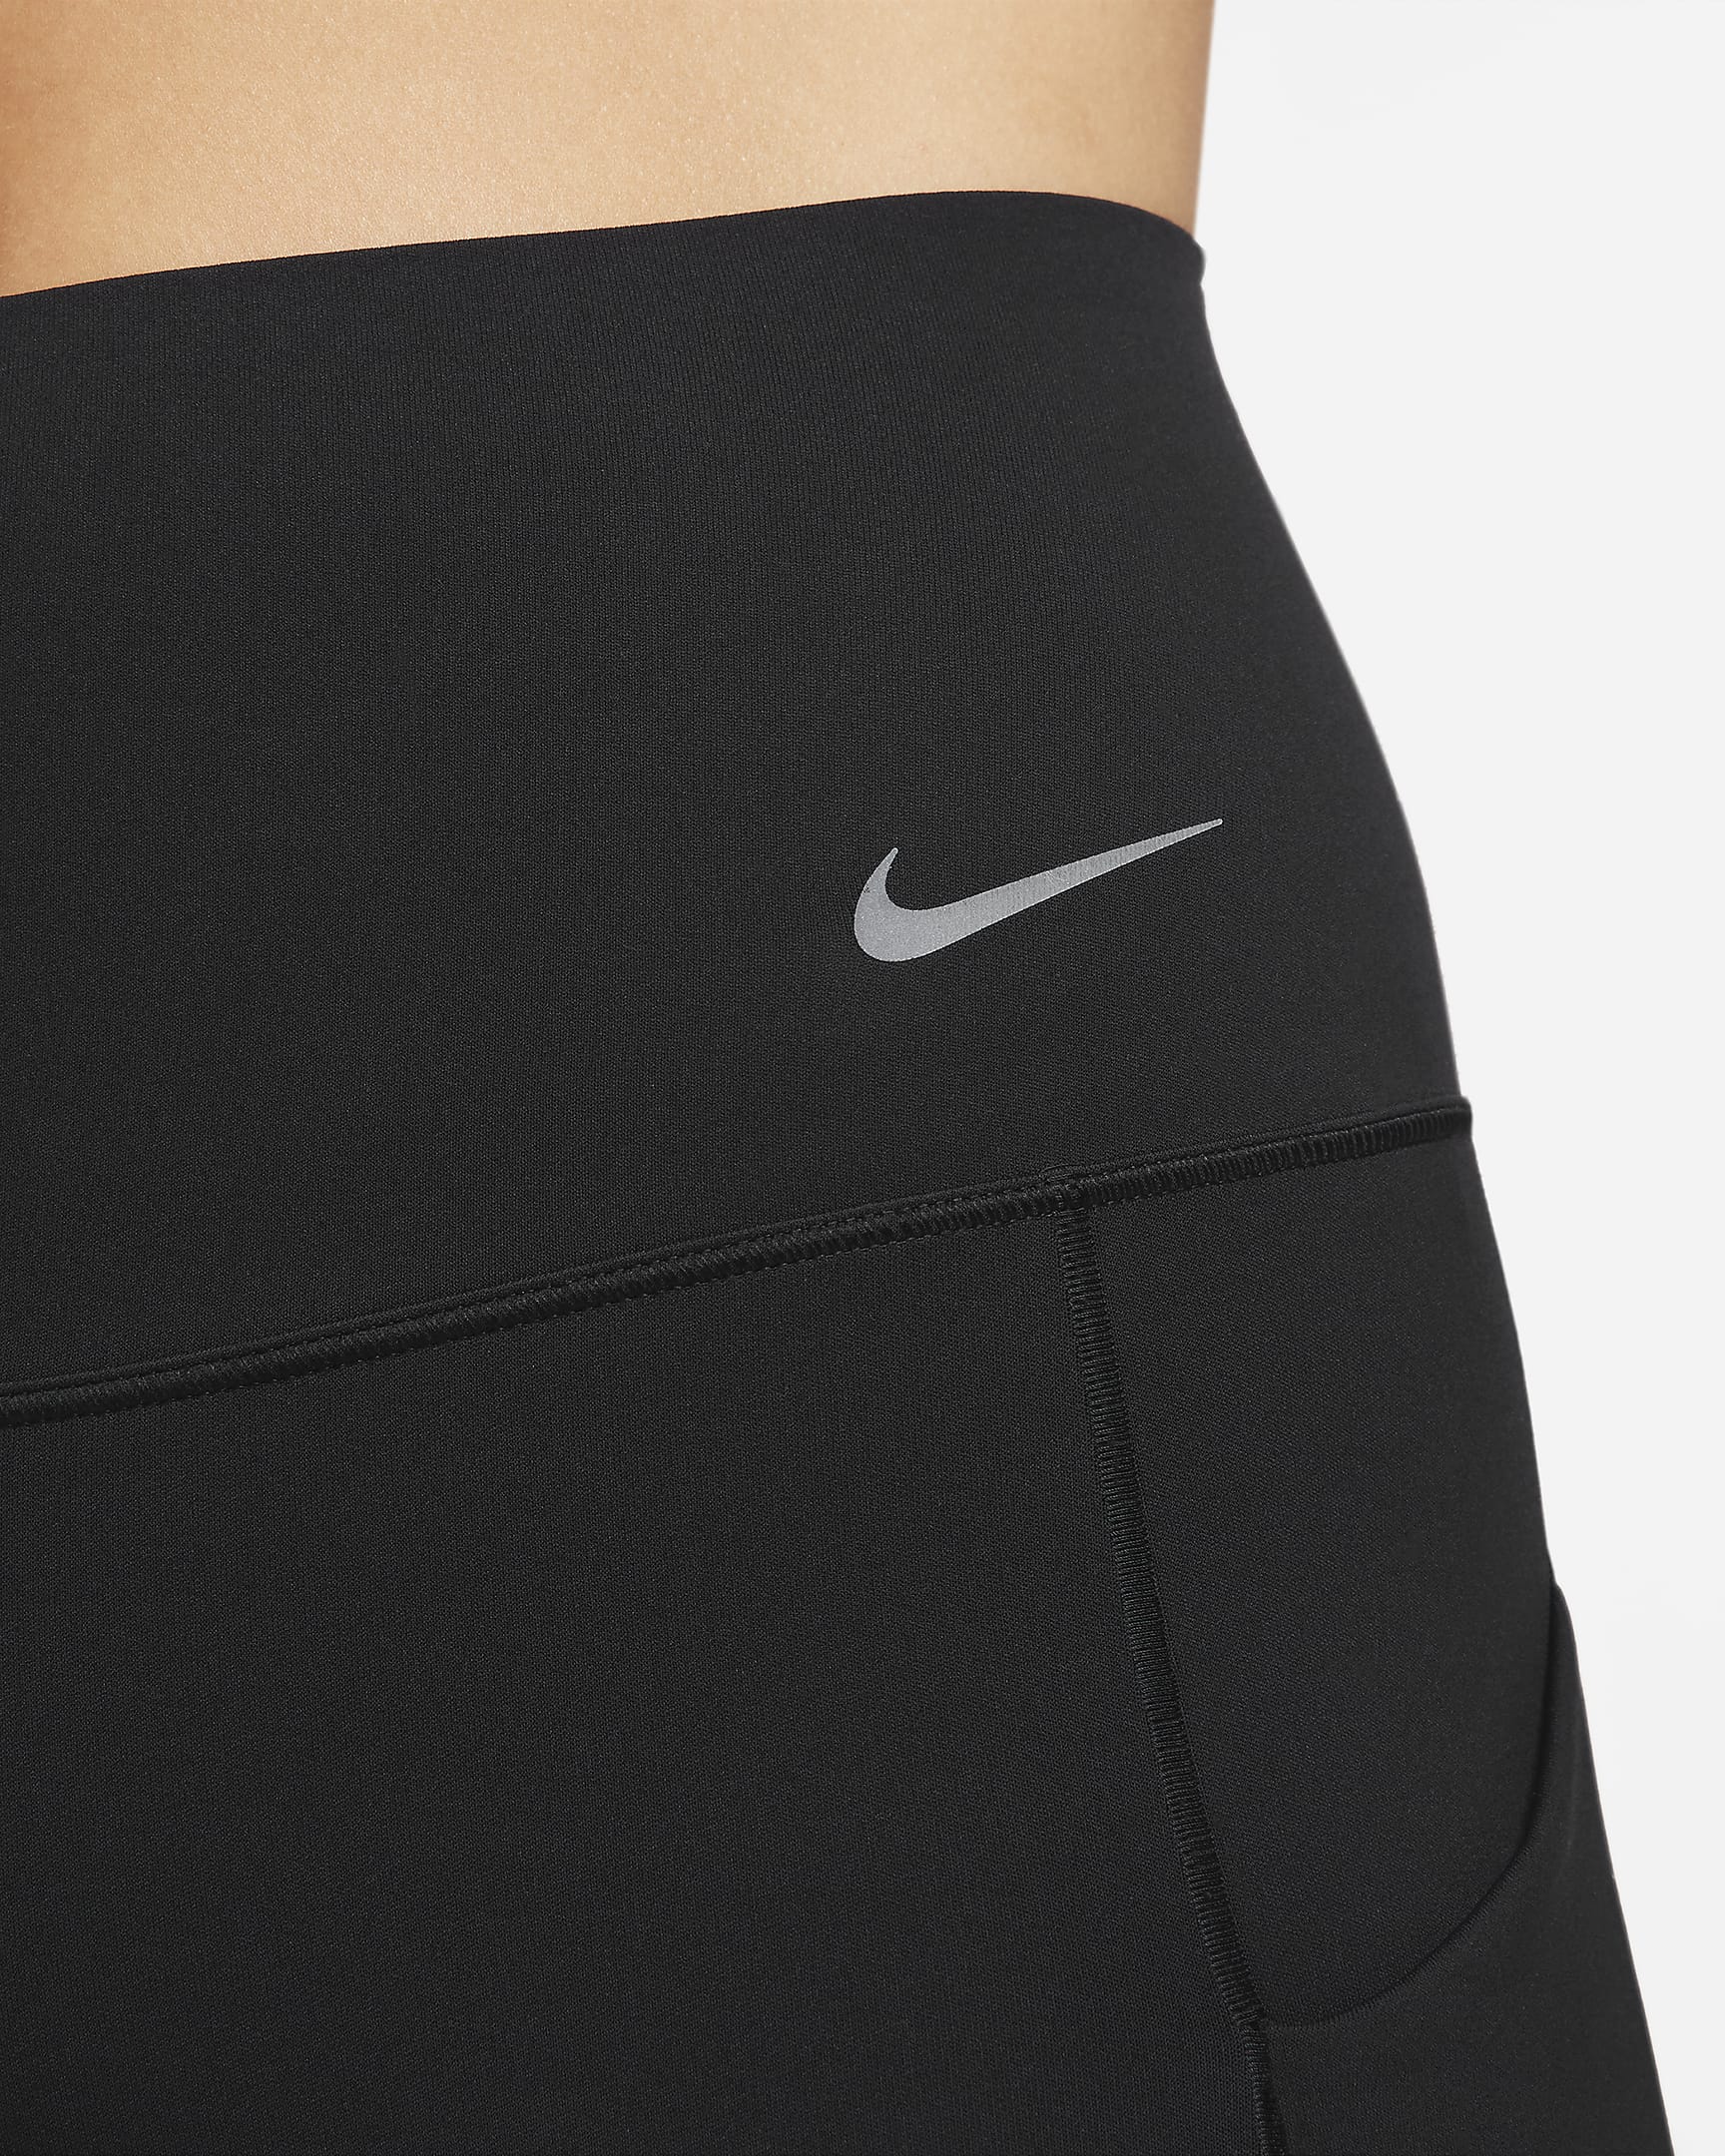 Nike Universa Women's Medium-Support High-Waisted Full-Length Leggings with Pockets - Black/Black